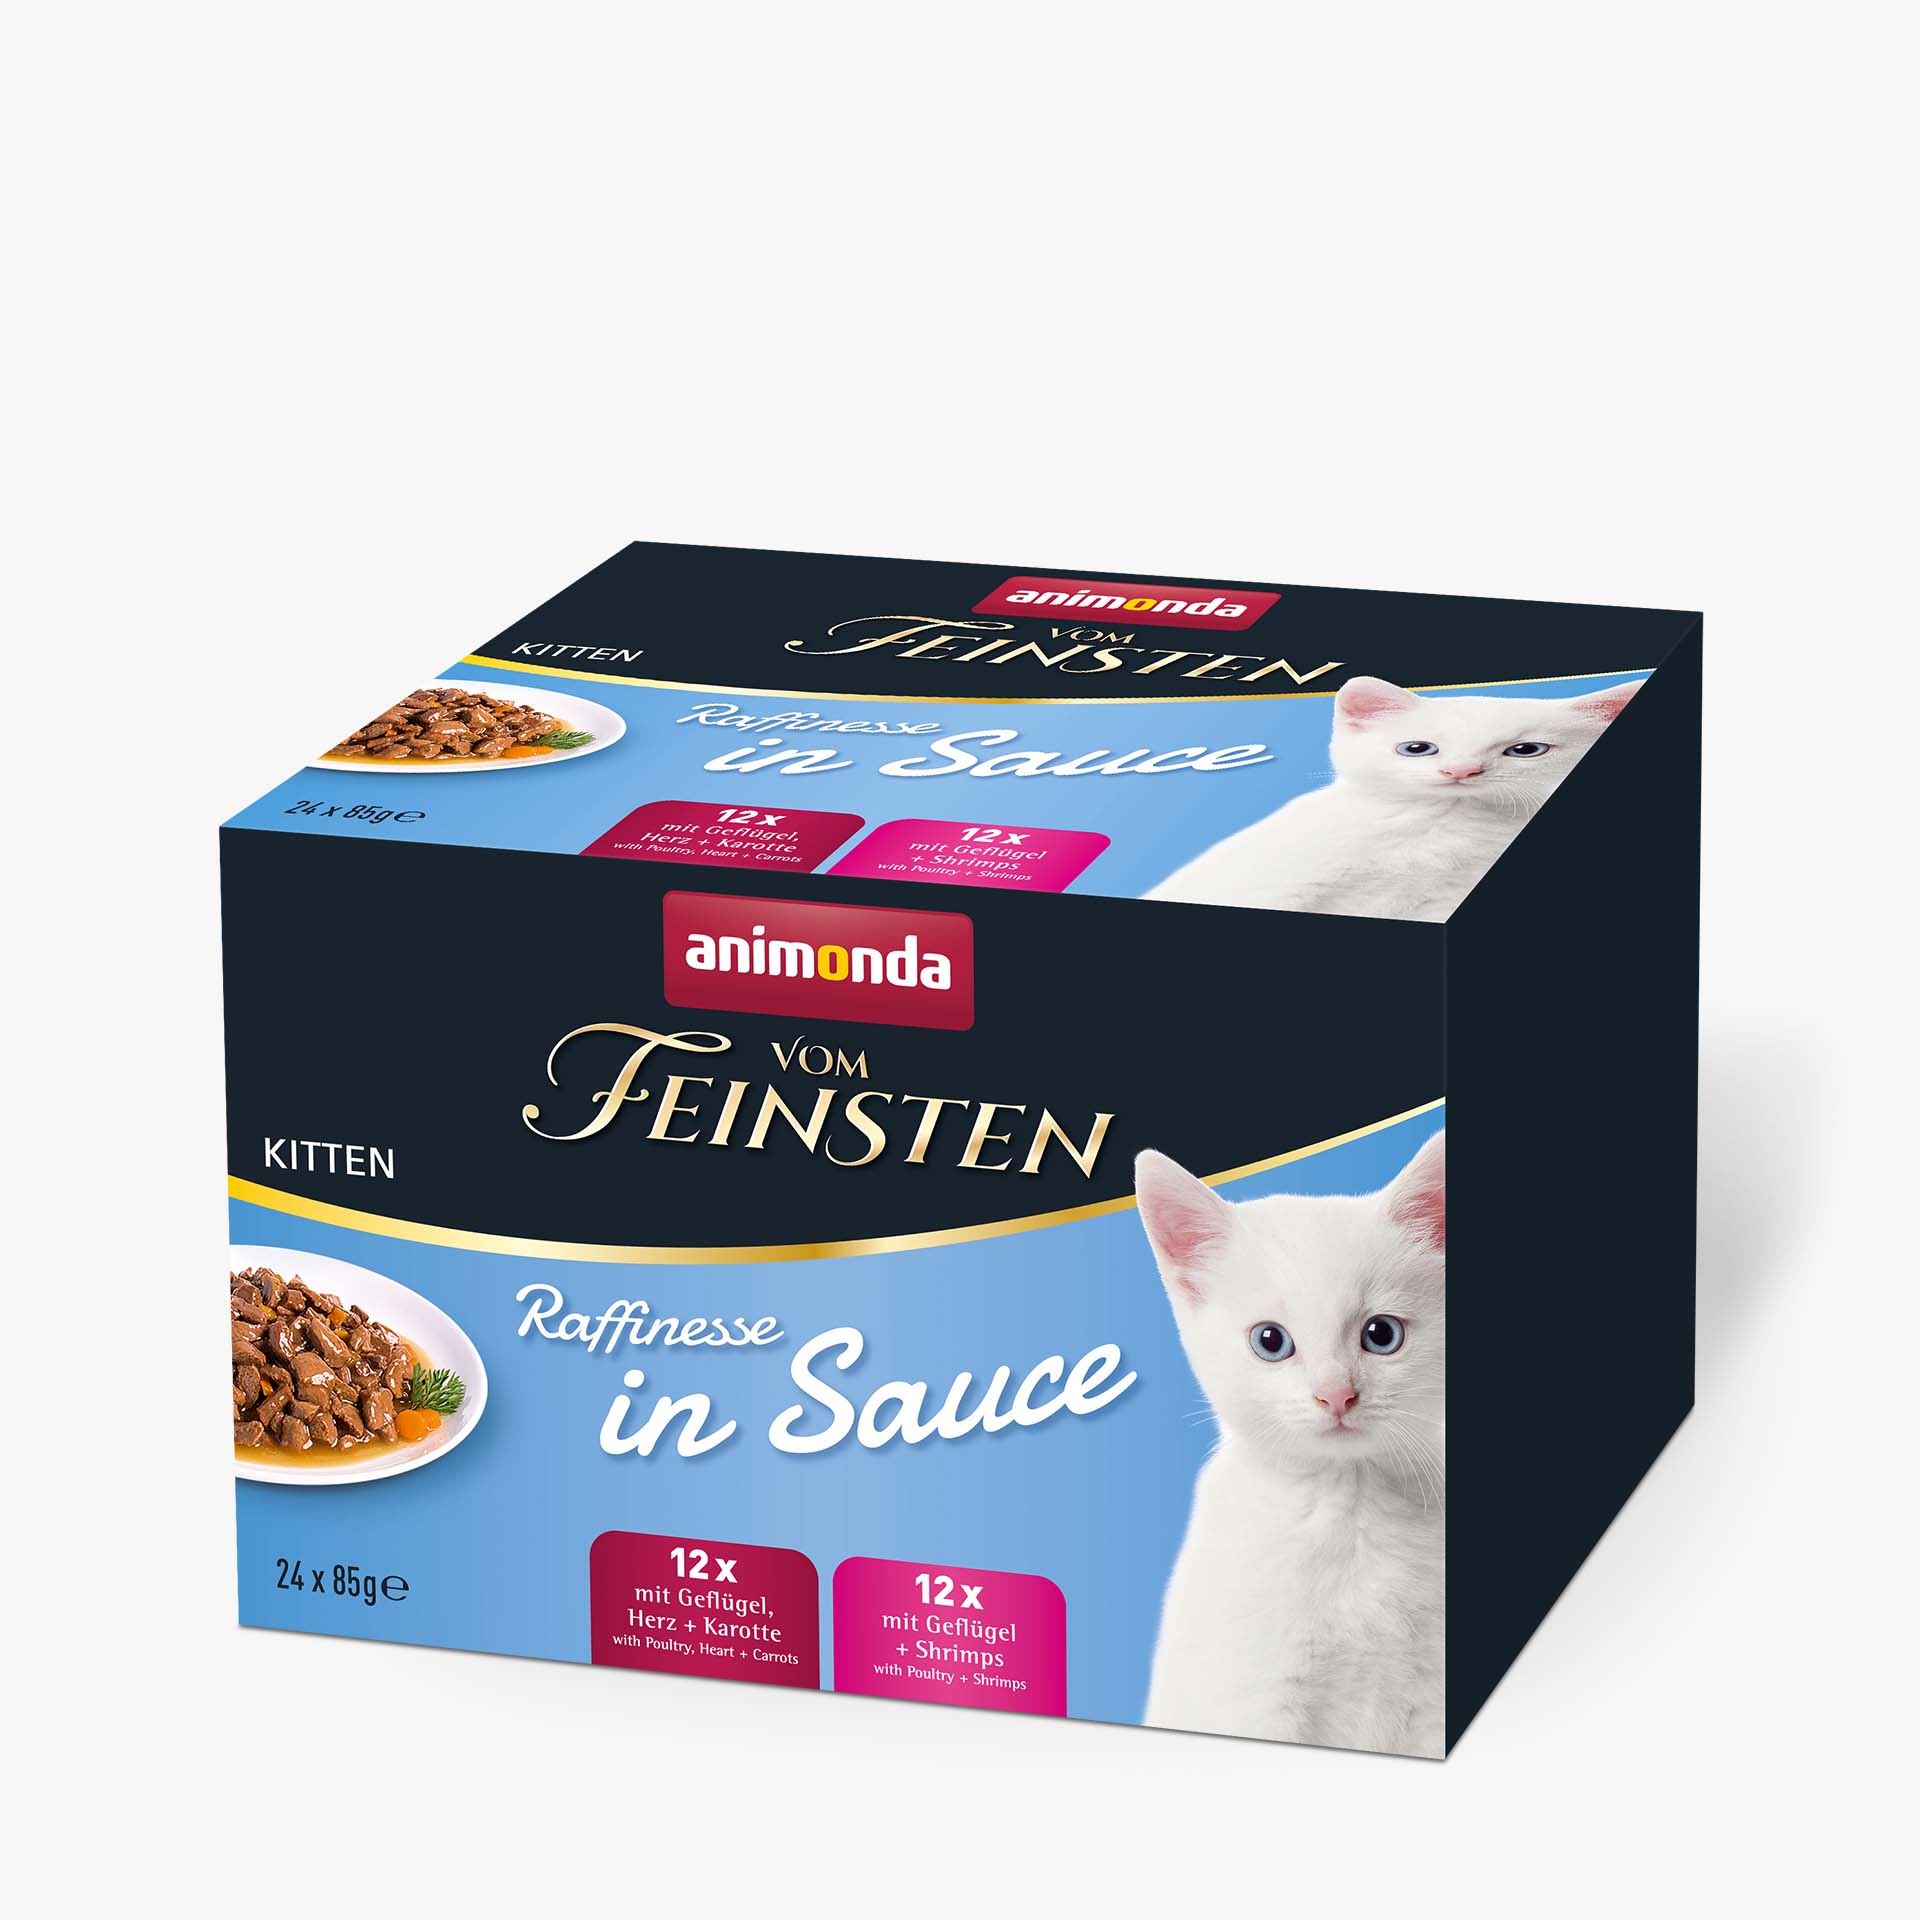 Vom Feinsten Kitten 24 x 85g Mixpack  Raffinesse in Sauce